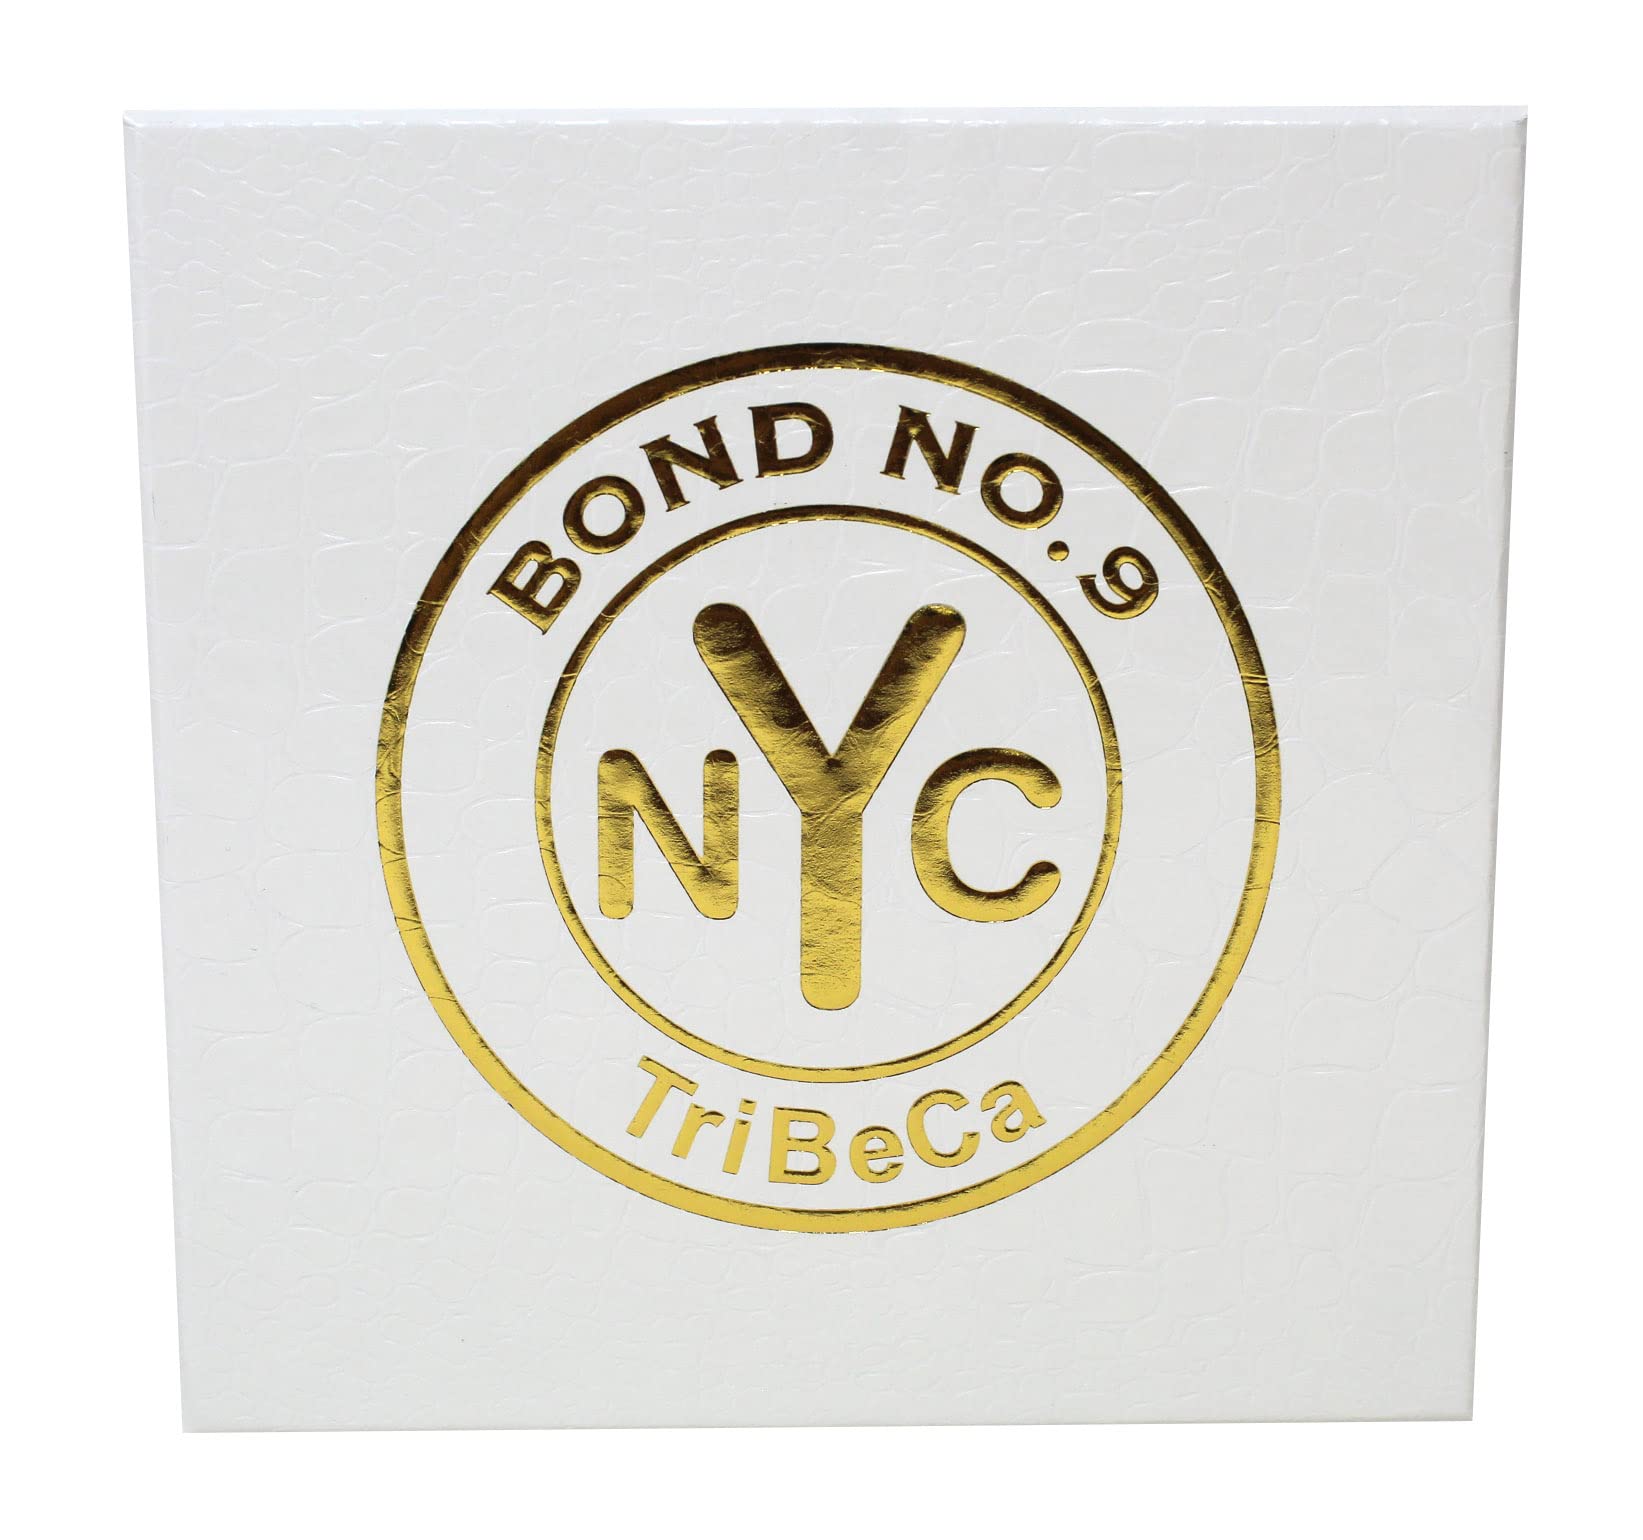 Bond No. 9 NYC Tribeca for Unisex Eau De Parfum Spray, 3.4 Ounce